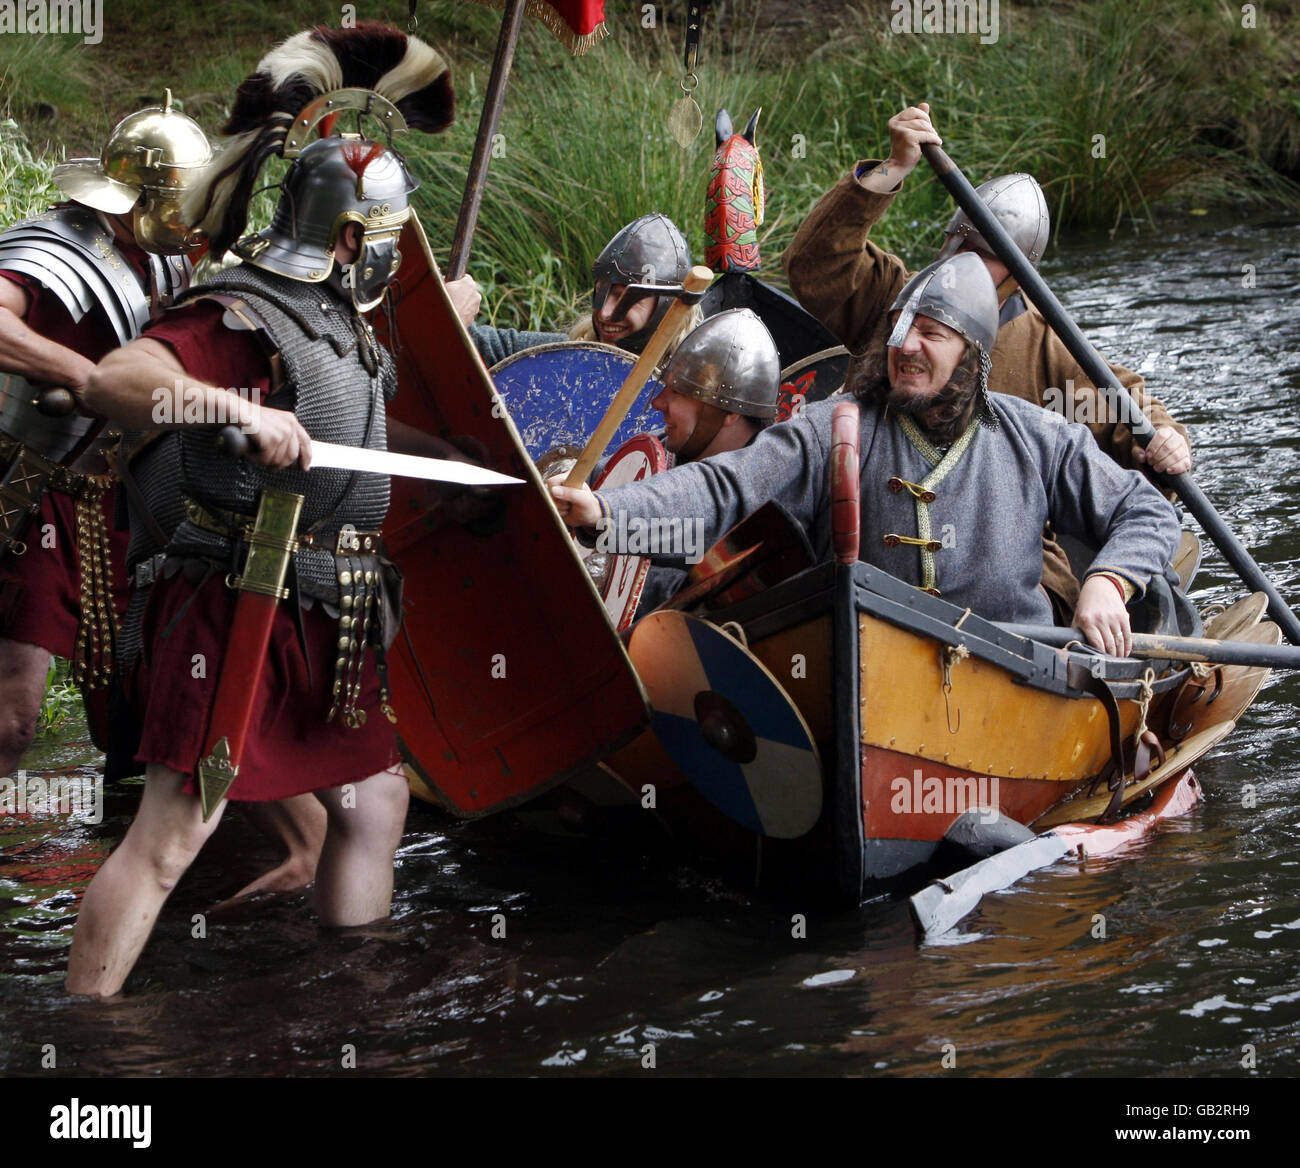 Los entusiastas del Festival Nacional de Historia Viva en Lankark Loch en Escocia recrean una escena de la historia como los raiders vikingos en un choque de barcos largos con los soldados romanos. Foto de stock